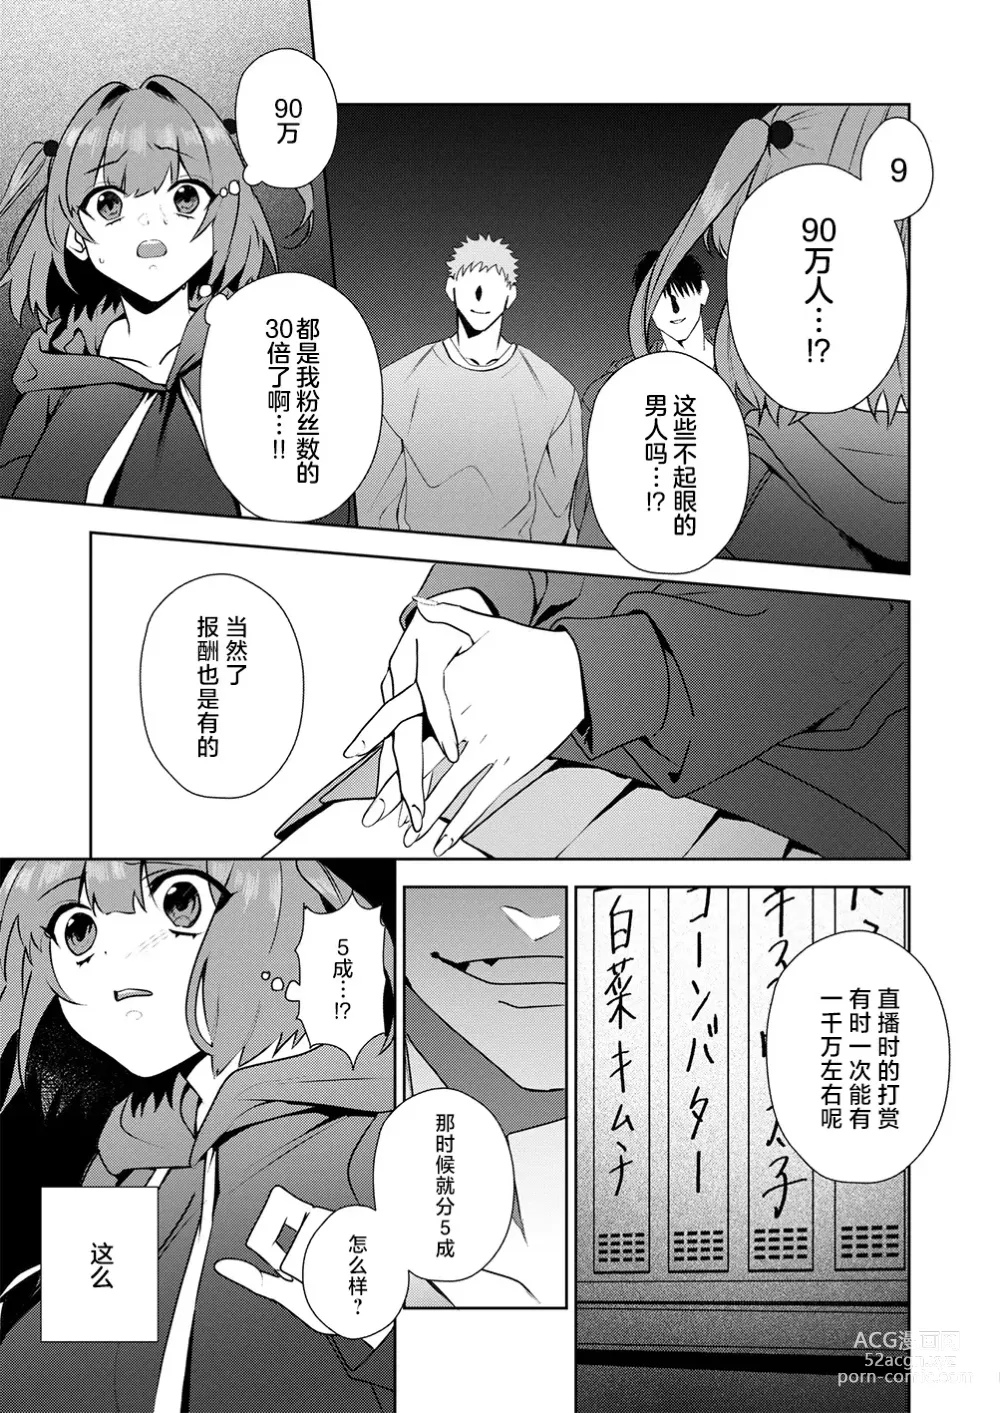 Page 7 of manga Motto Atashi o Oshite kure!